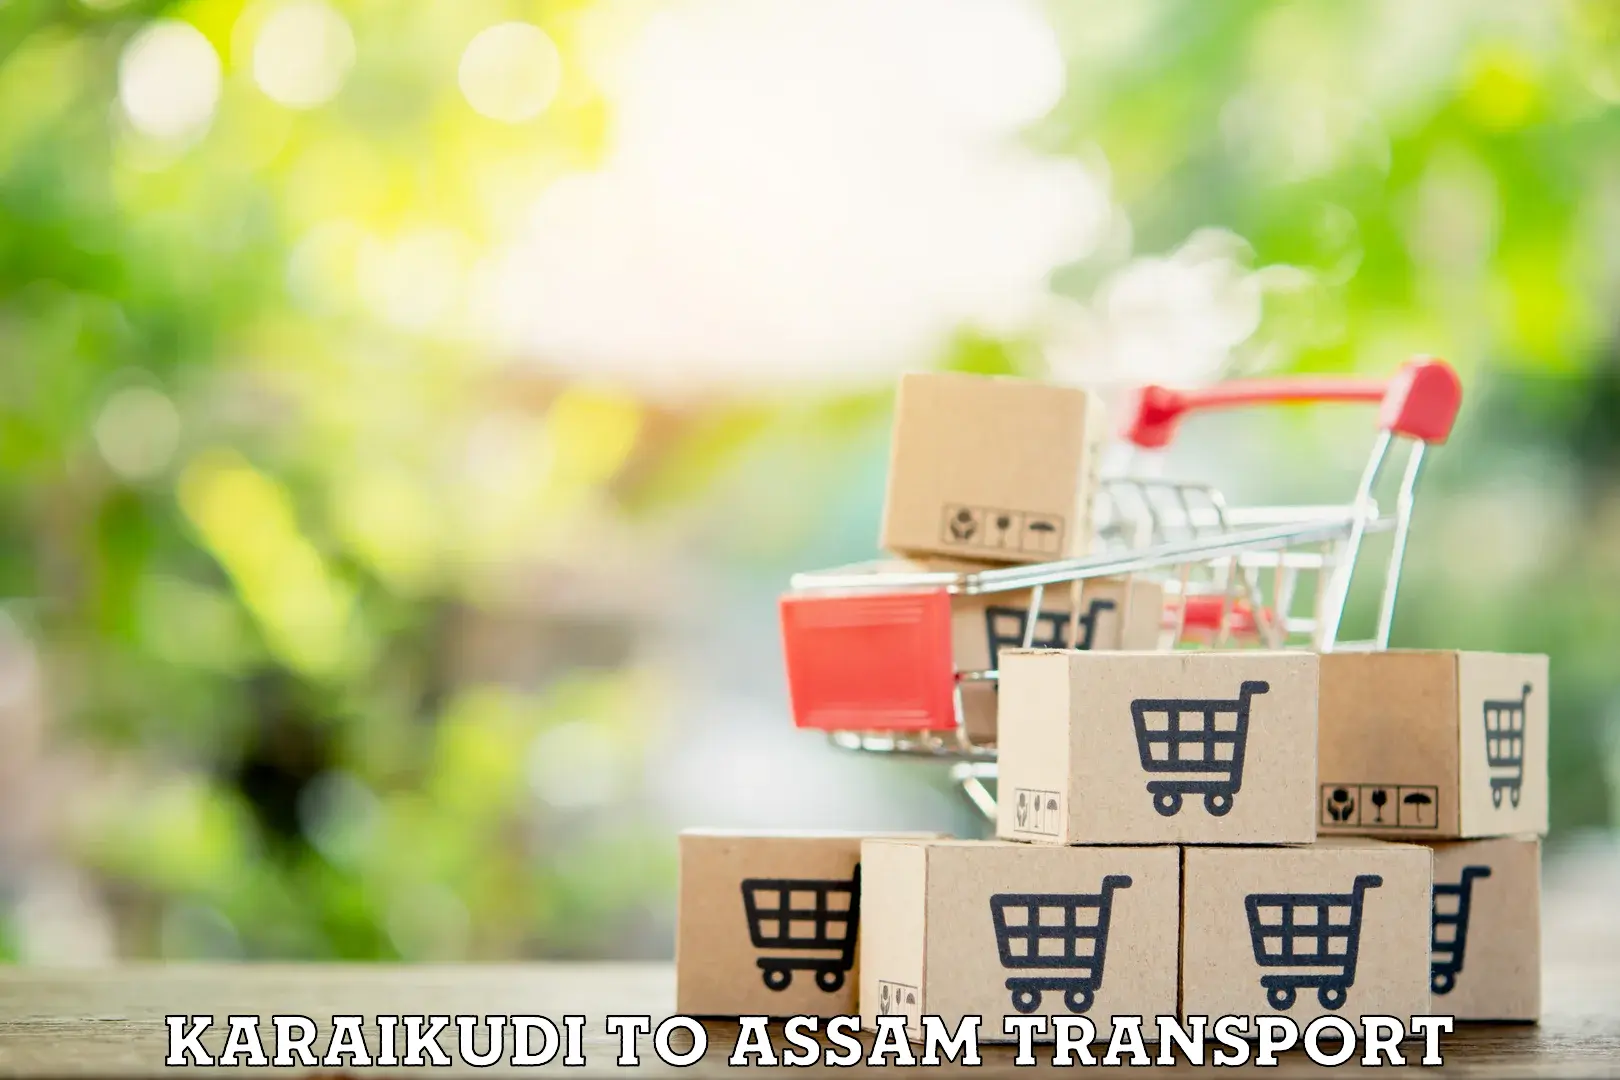 Land transport services in Karaikudi to Assam